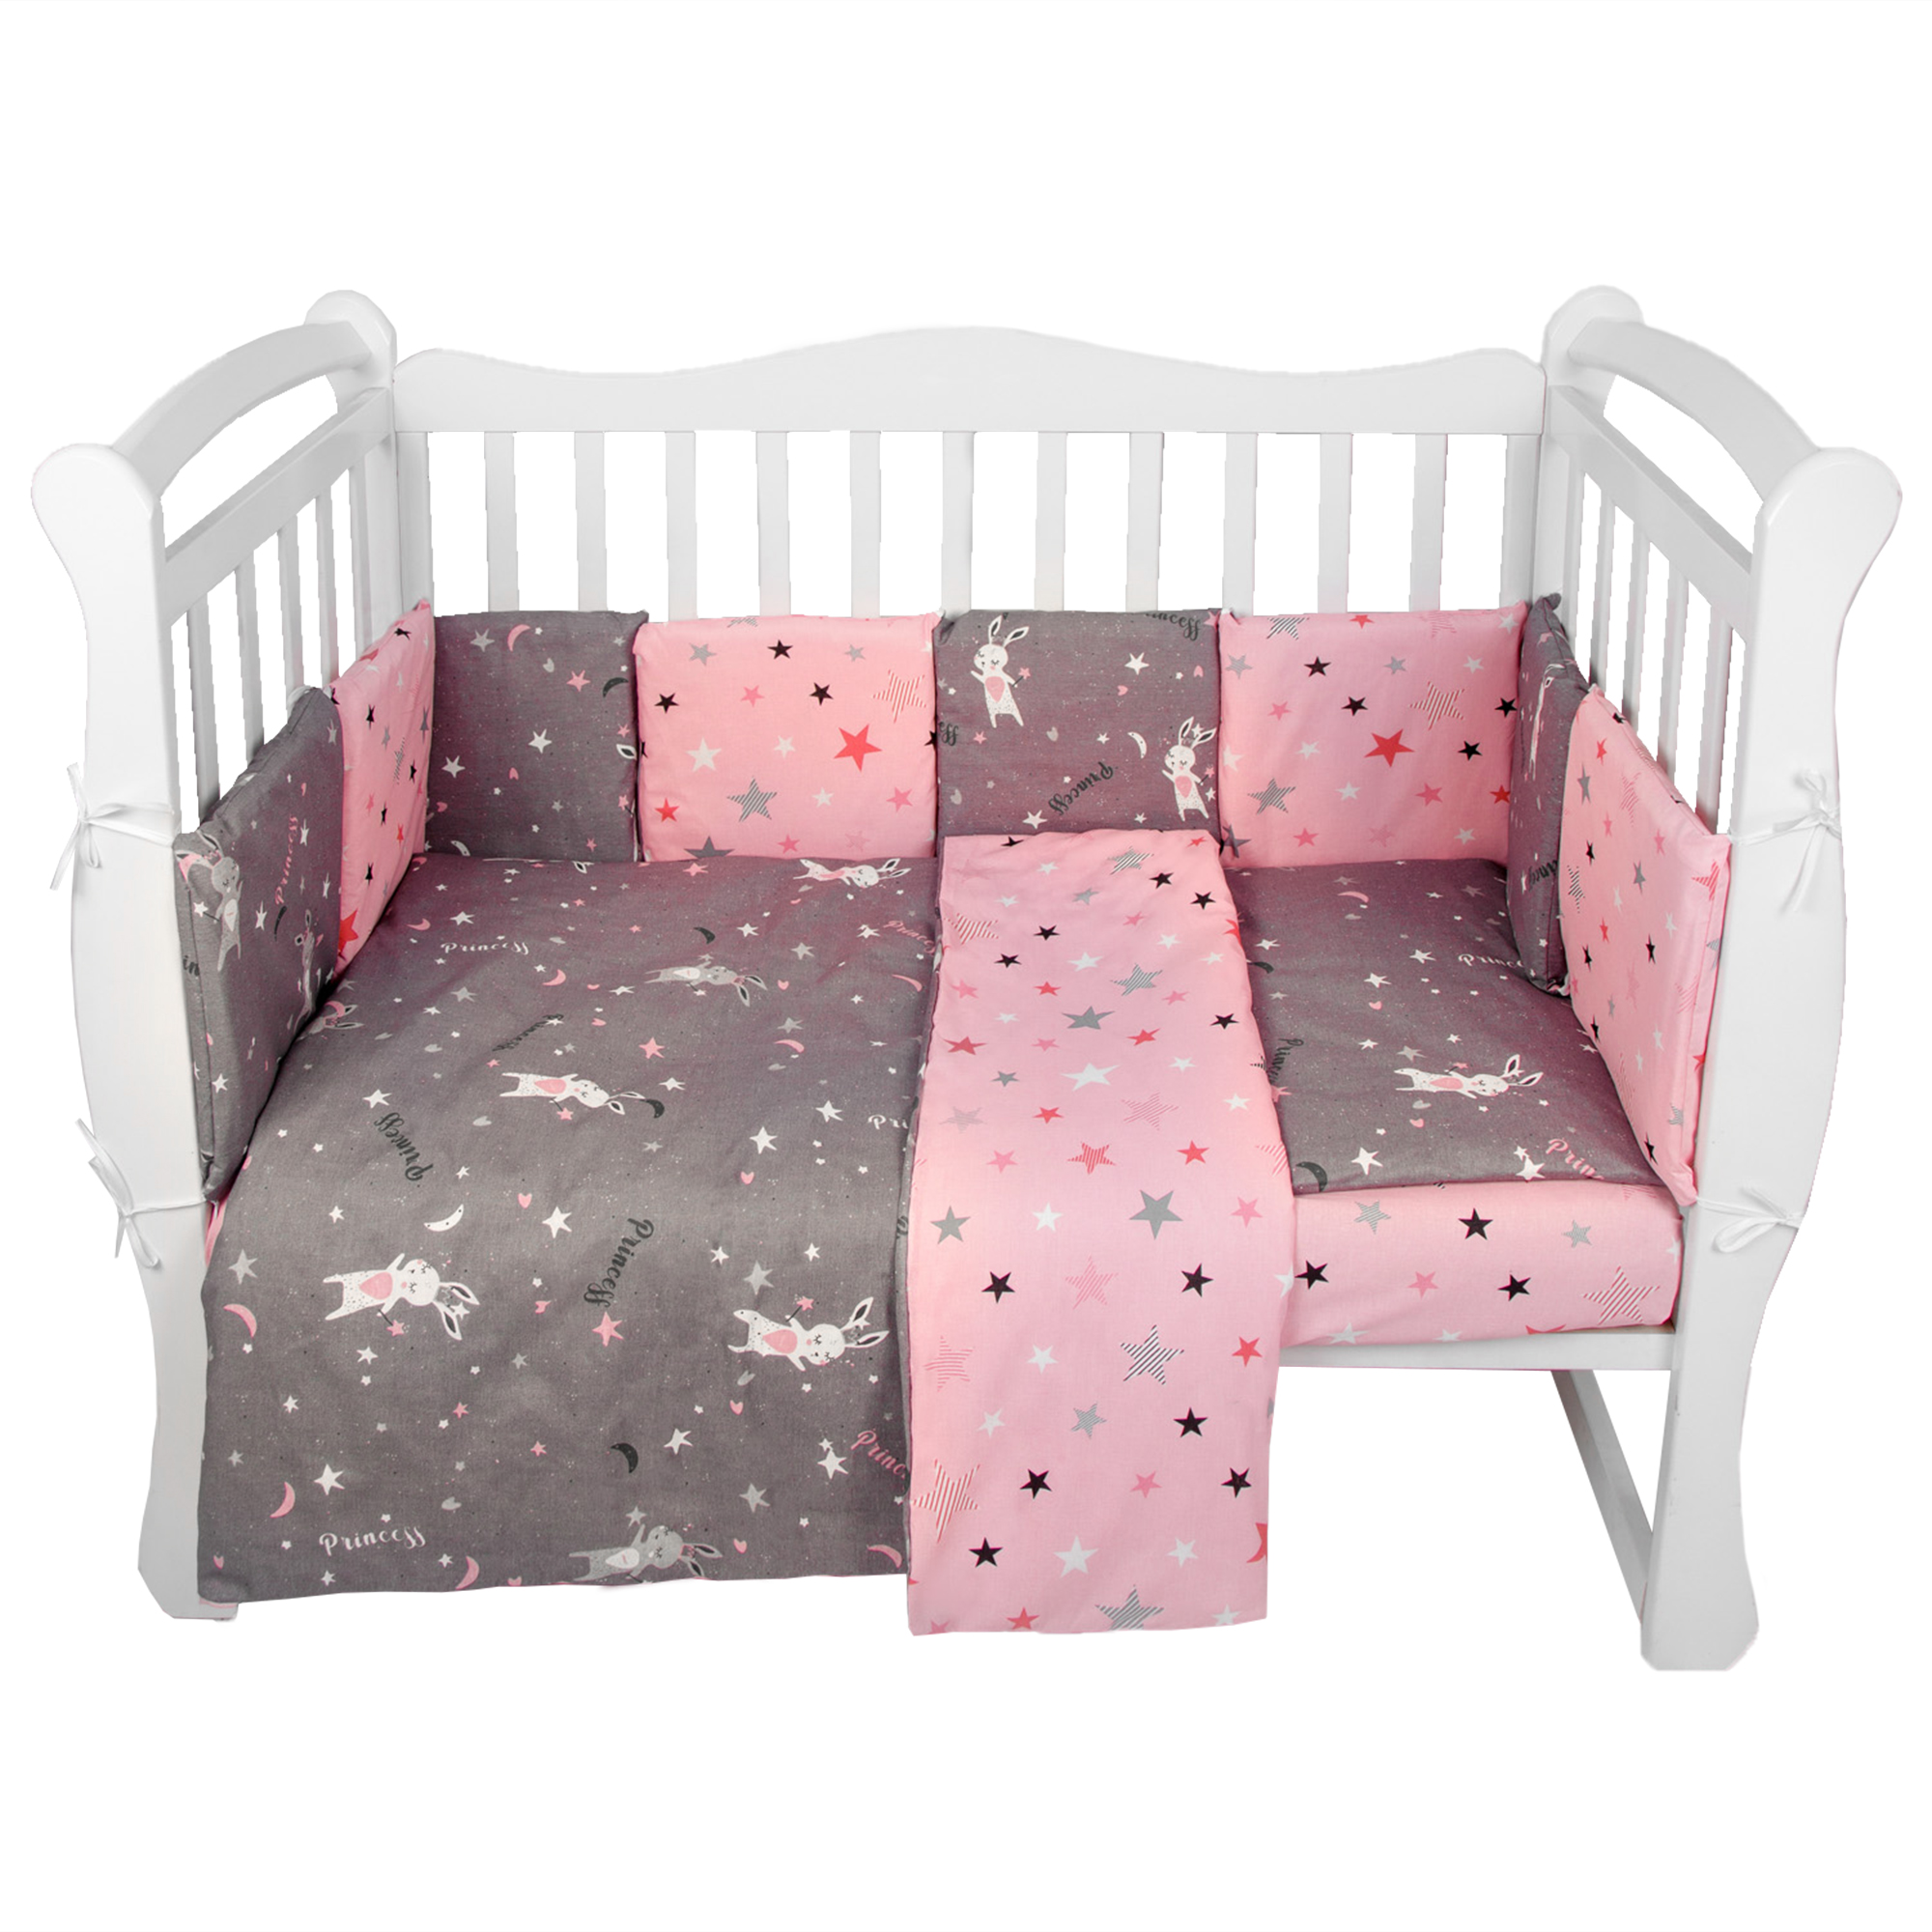 Комплект в кроватку AmaroBaby 15 предметов Premium Princess серый/розовый комплект в кроватку amarobaby premium лес поплин 18 предметов